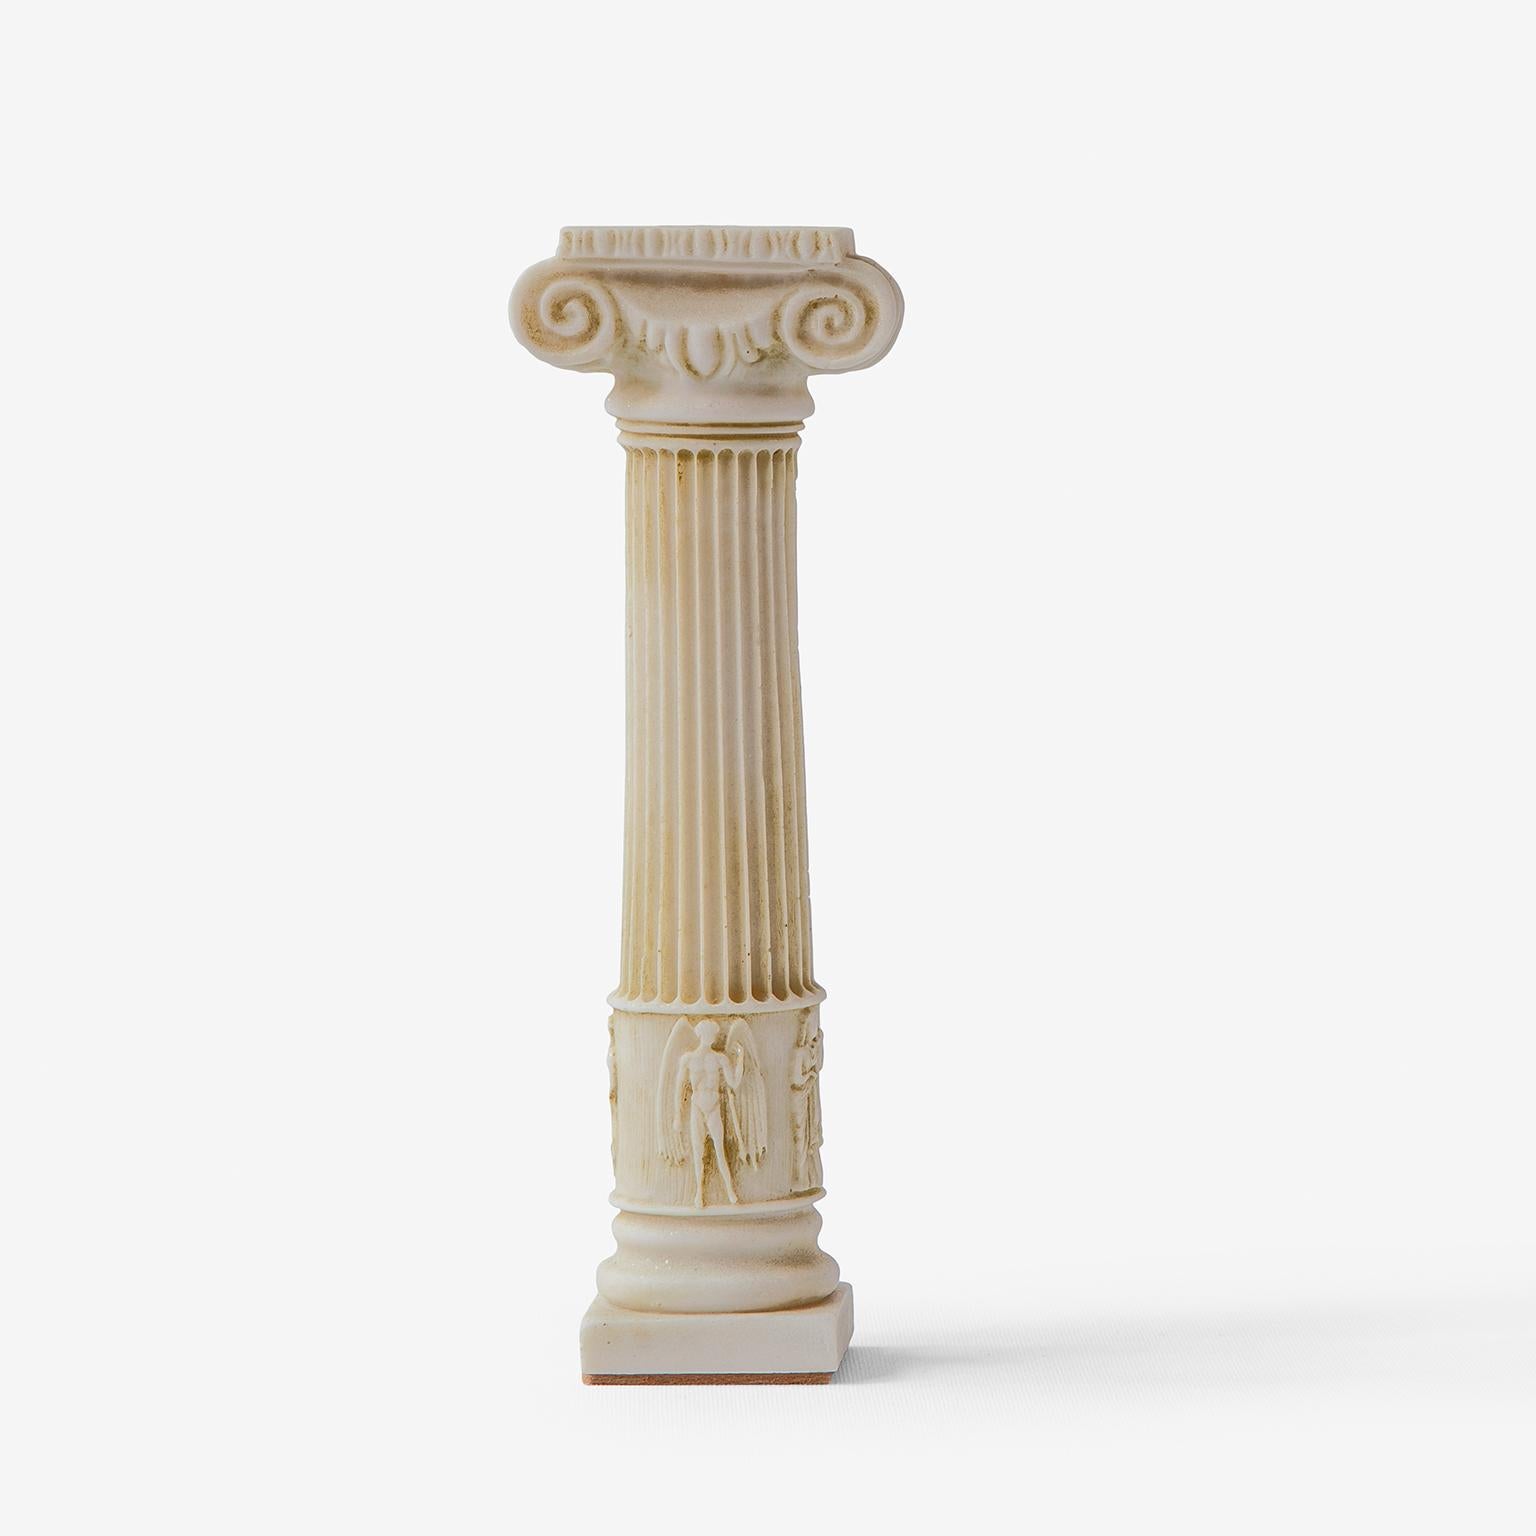 Gewicht: 700 gr

Dieser Kerzenständer ist ein dekoratives Element, das der schlanken, langen und eleganten Form der ionischen Säulen ähnelt, die an der westlichen und südlichen Küste Anatoliens zu finden sind. Er besteht aus gepresstem Marmorpulver